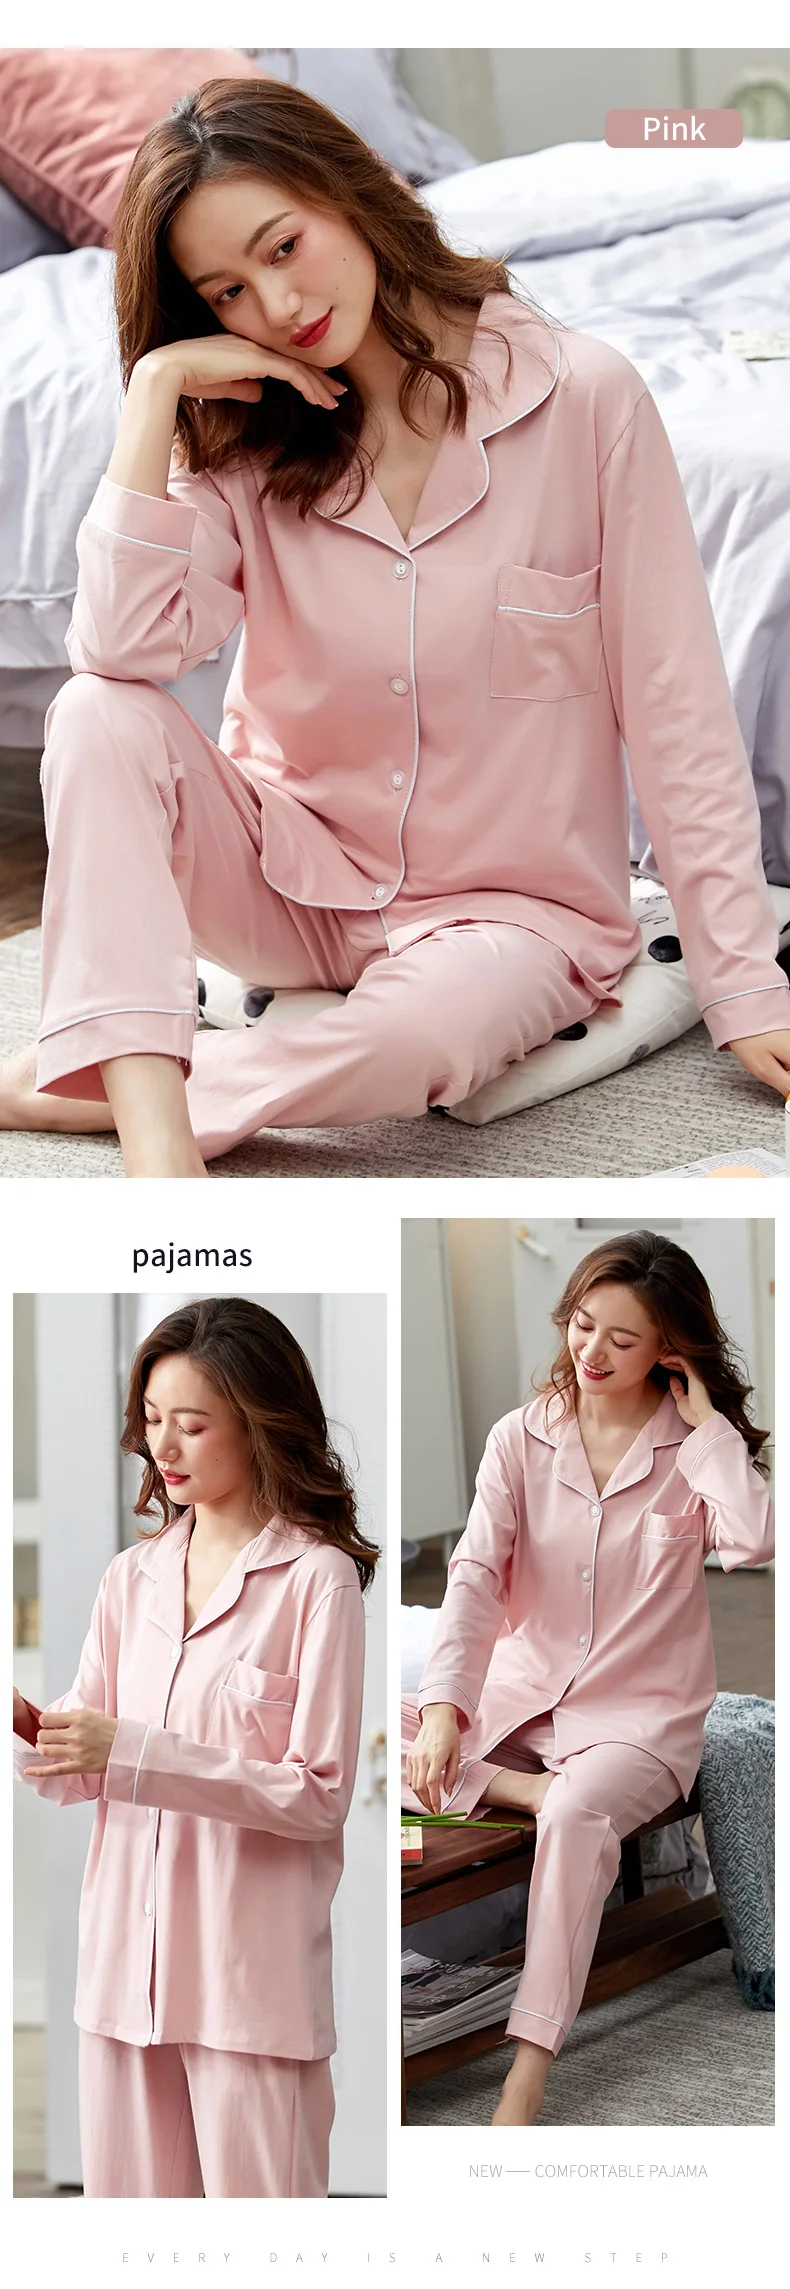 pj sets 100% Cotton Pajamas for Women PJ Full Sleeves Pijama Mujer Invierno Button-Down Winter Sleepwear Set Women White Cotton Pyjamas plus size pajamas